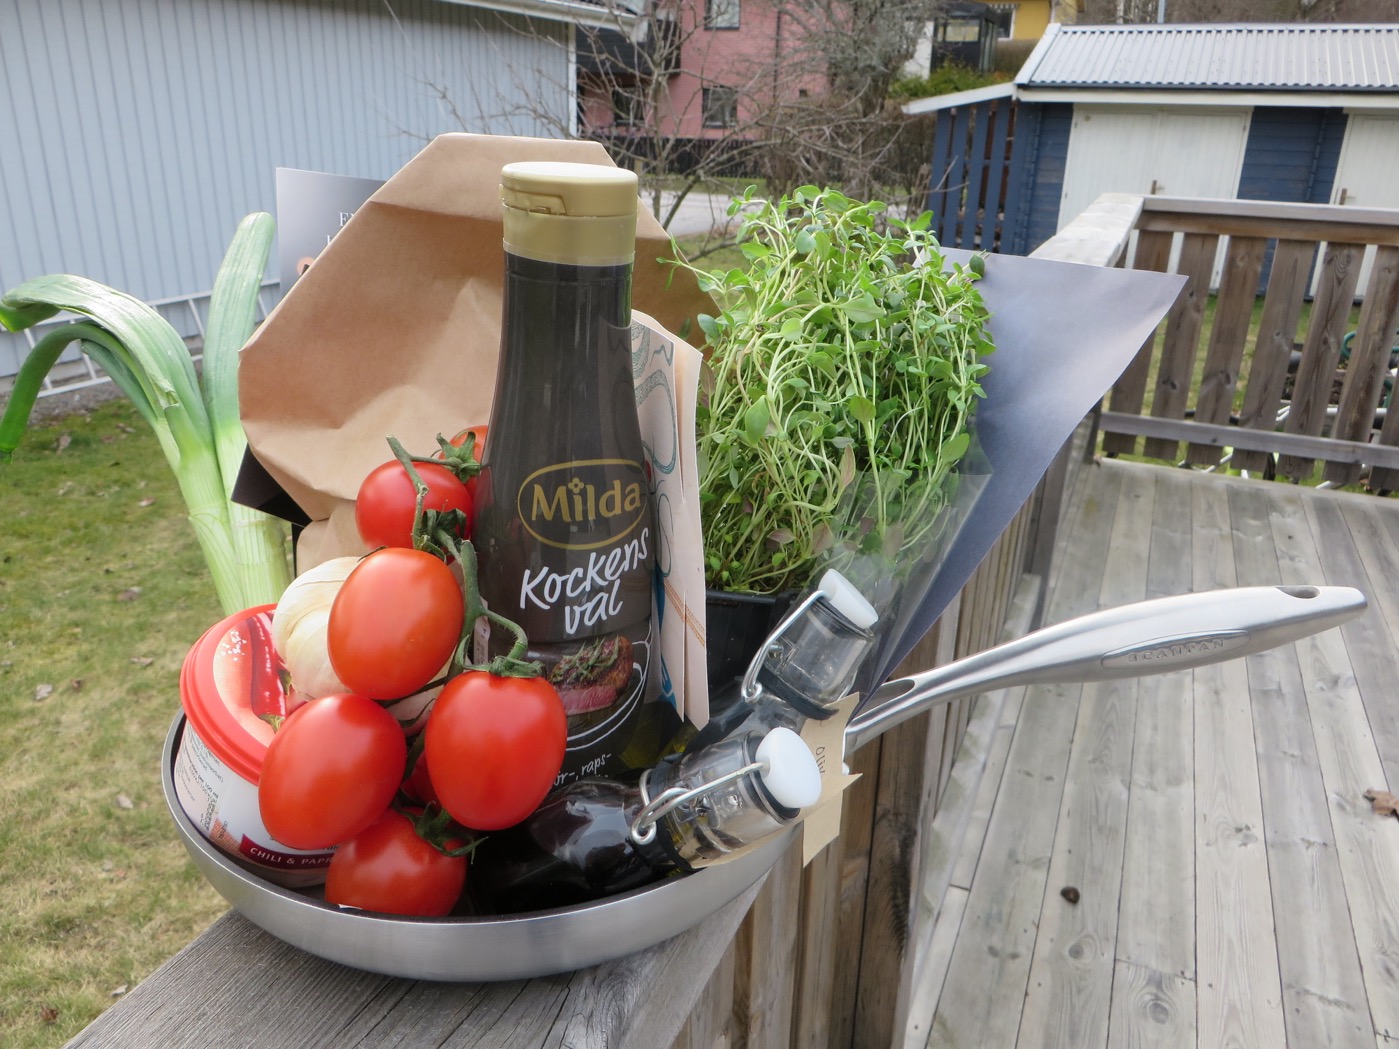 Milda Kockens val, fina tomater, potatis, timjan, vårlök, vitlök och stekpanna!